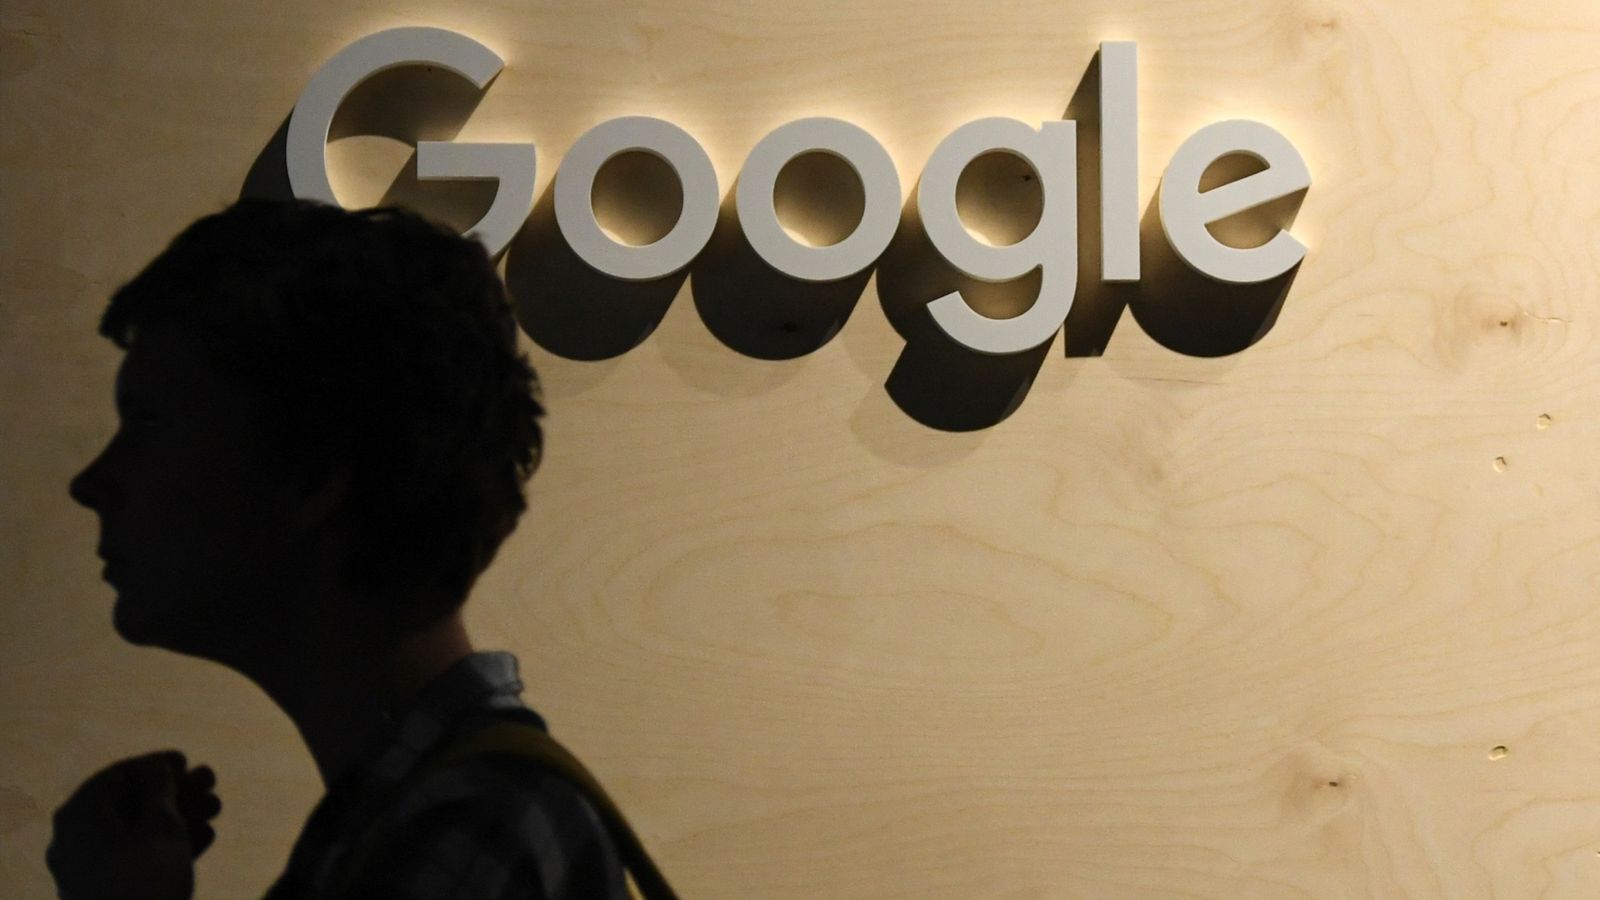 Инженер Google ушел в отпуск после того, как заявил, что чат-бот может выражать мысли и чувства |  новости науки и техники